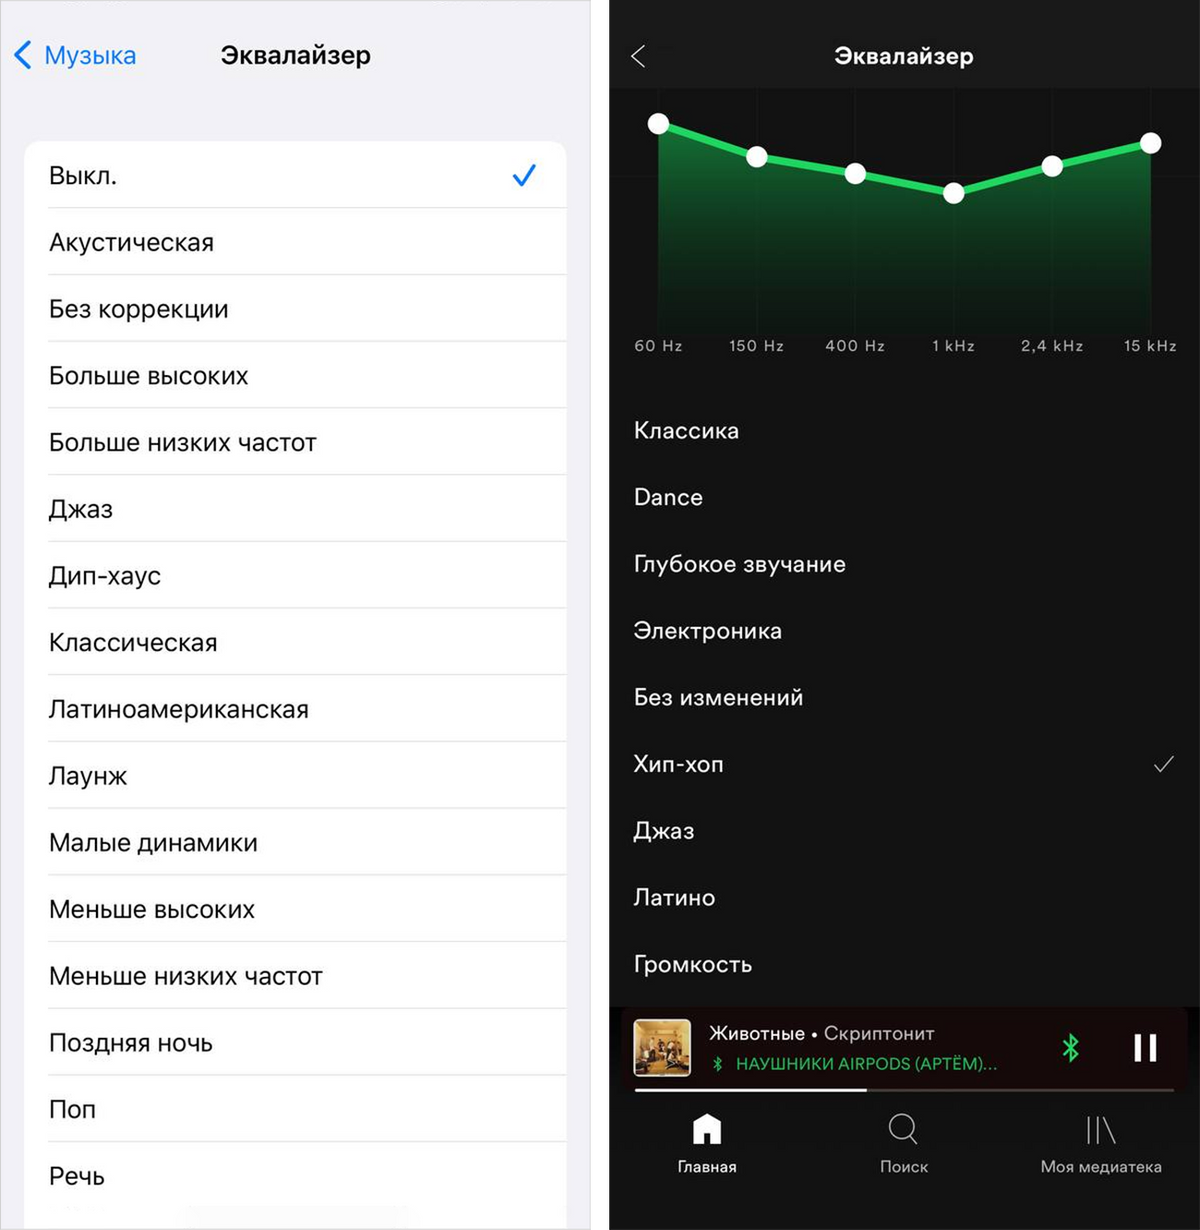 Скриншоты параметров из&nbsp;приложений для&nbsp;воспроизведения музыки&nbsp;— Apple Music и&nbsp;Spotify